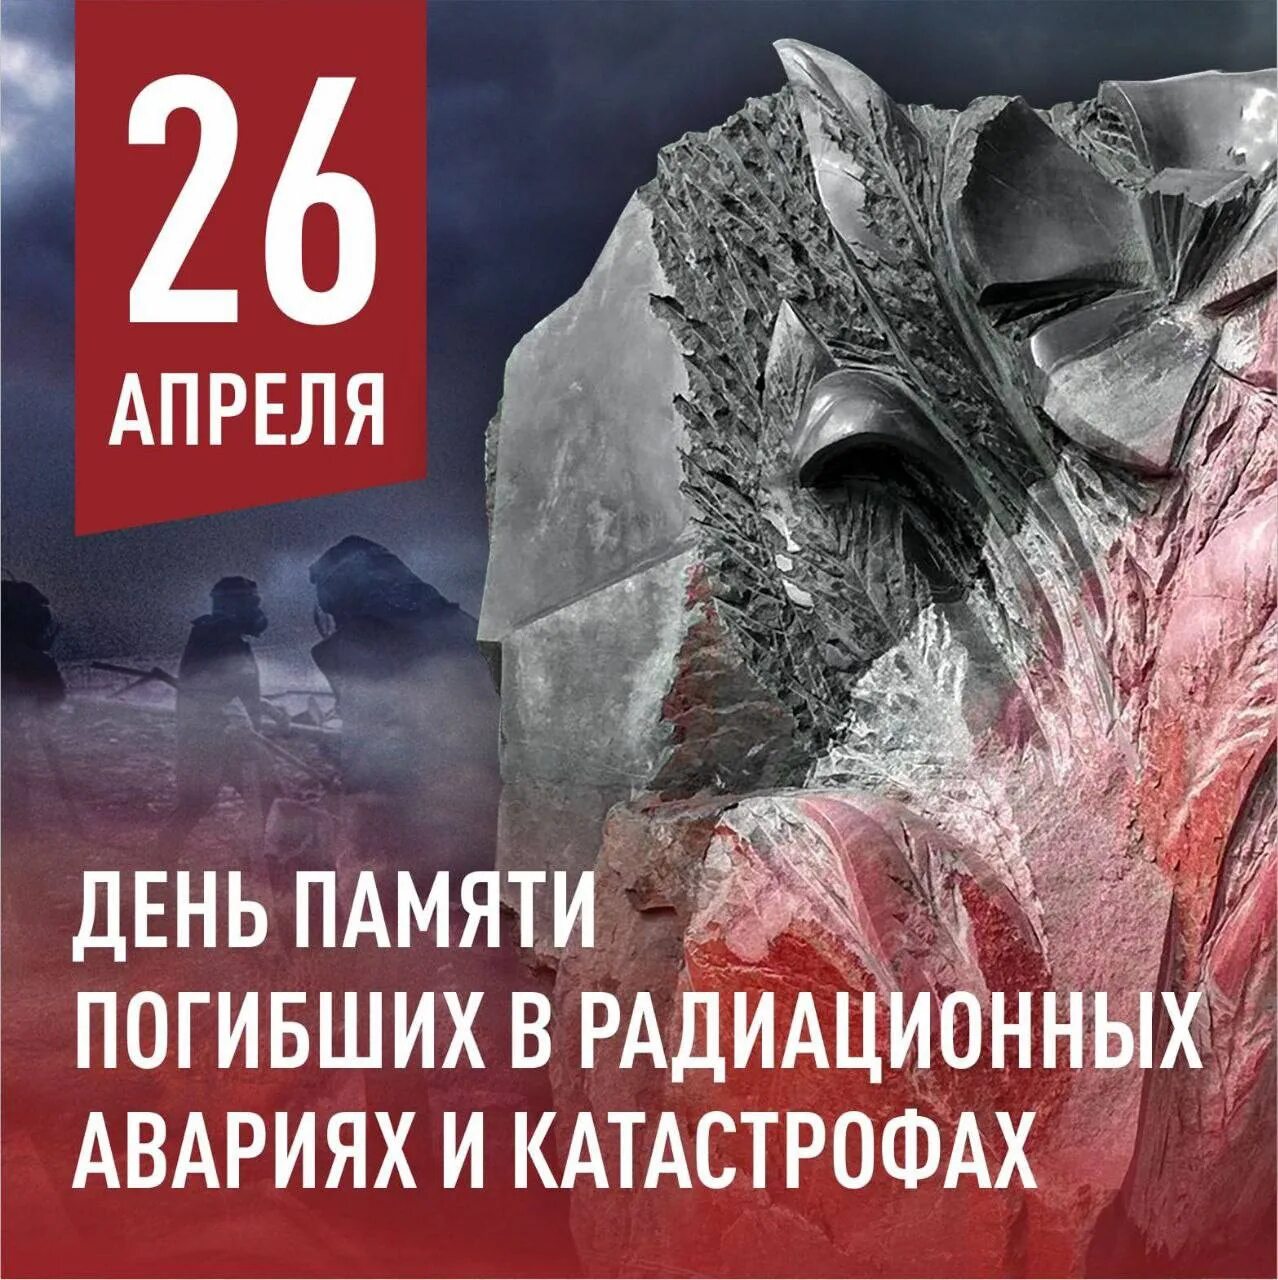 26 апреля чернобыль. День памяти погибших в радиационных авариях и катастрофах. 26 Апреля день памяти. 26 Апреля день памяти погибших в радиационных. День памяти погибших в радиационных катастрофах.